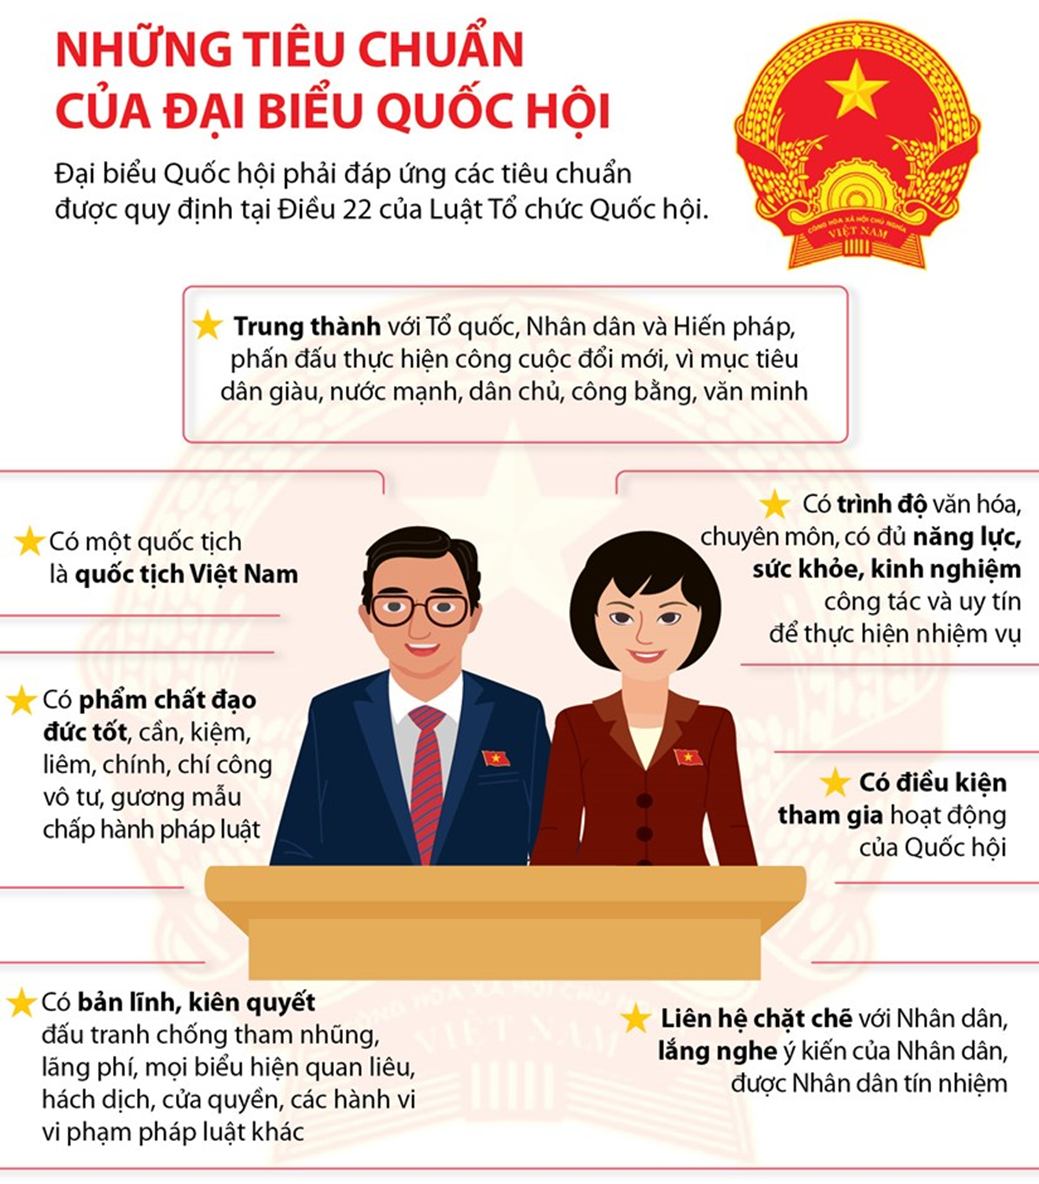 Em hãy thiết kế một sản phẩm giới thiệu về Quốc hội, Chủ tịch nước, Chính phủ Cộng hòa xã hội chủ nghĩa Việt Nam: chức năng, cơ cấu tổ chức và hoạt động của Quốc hội. (ảnh 2)